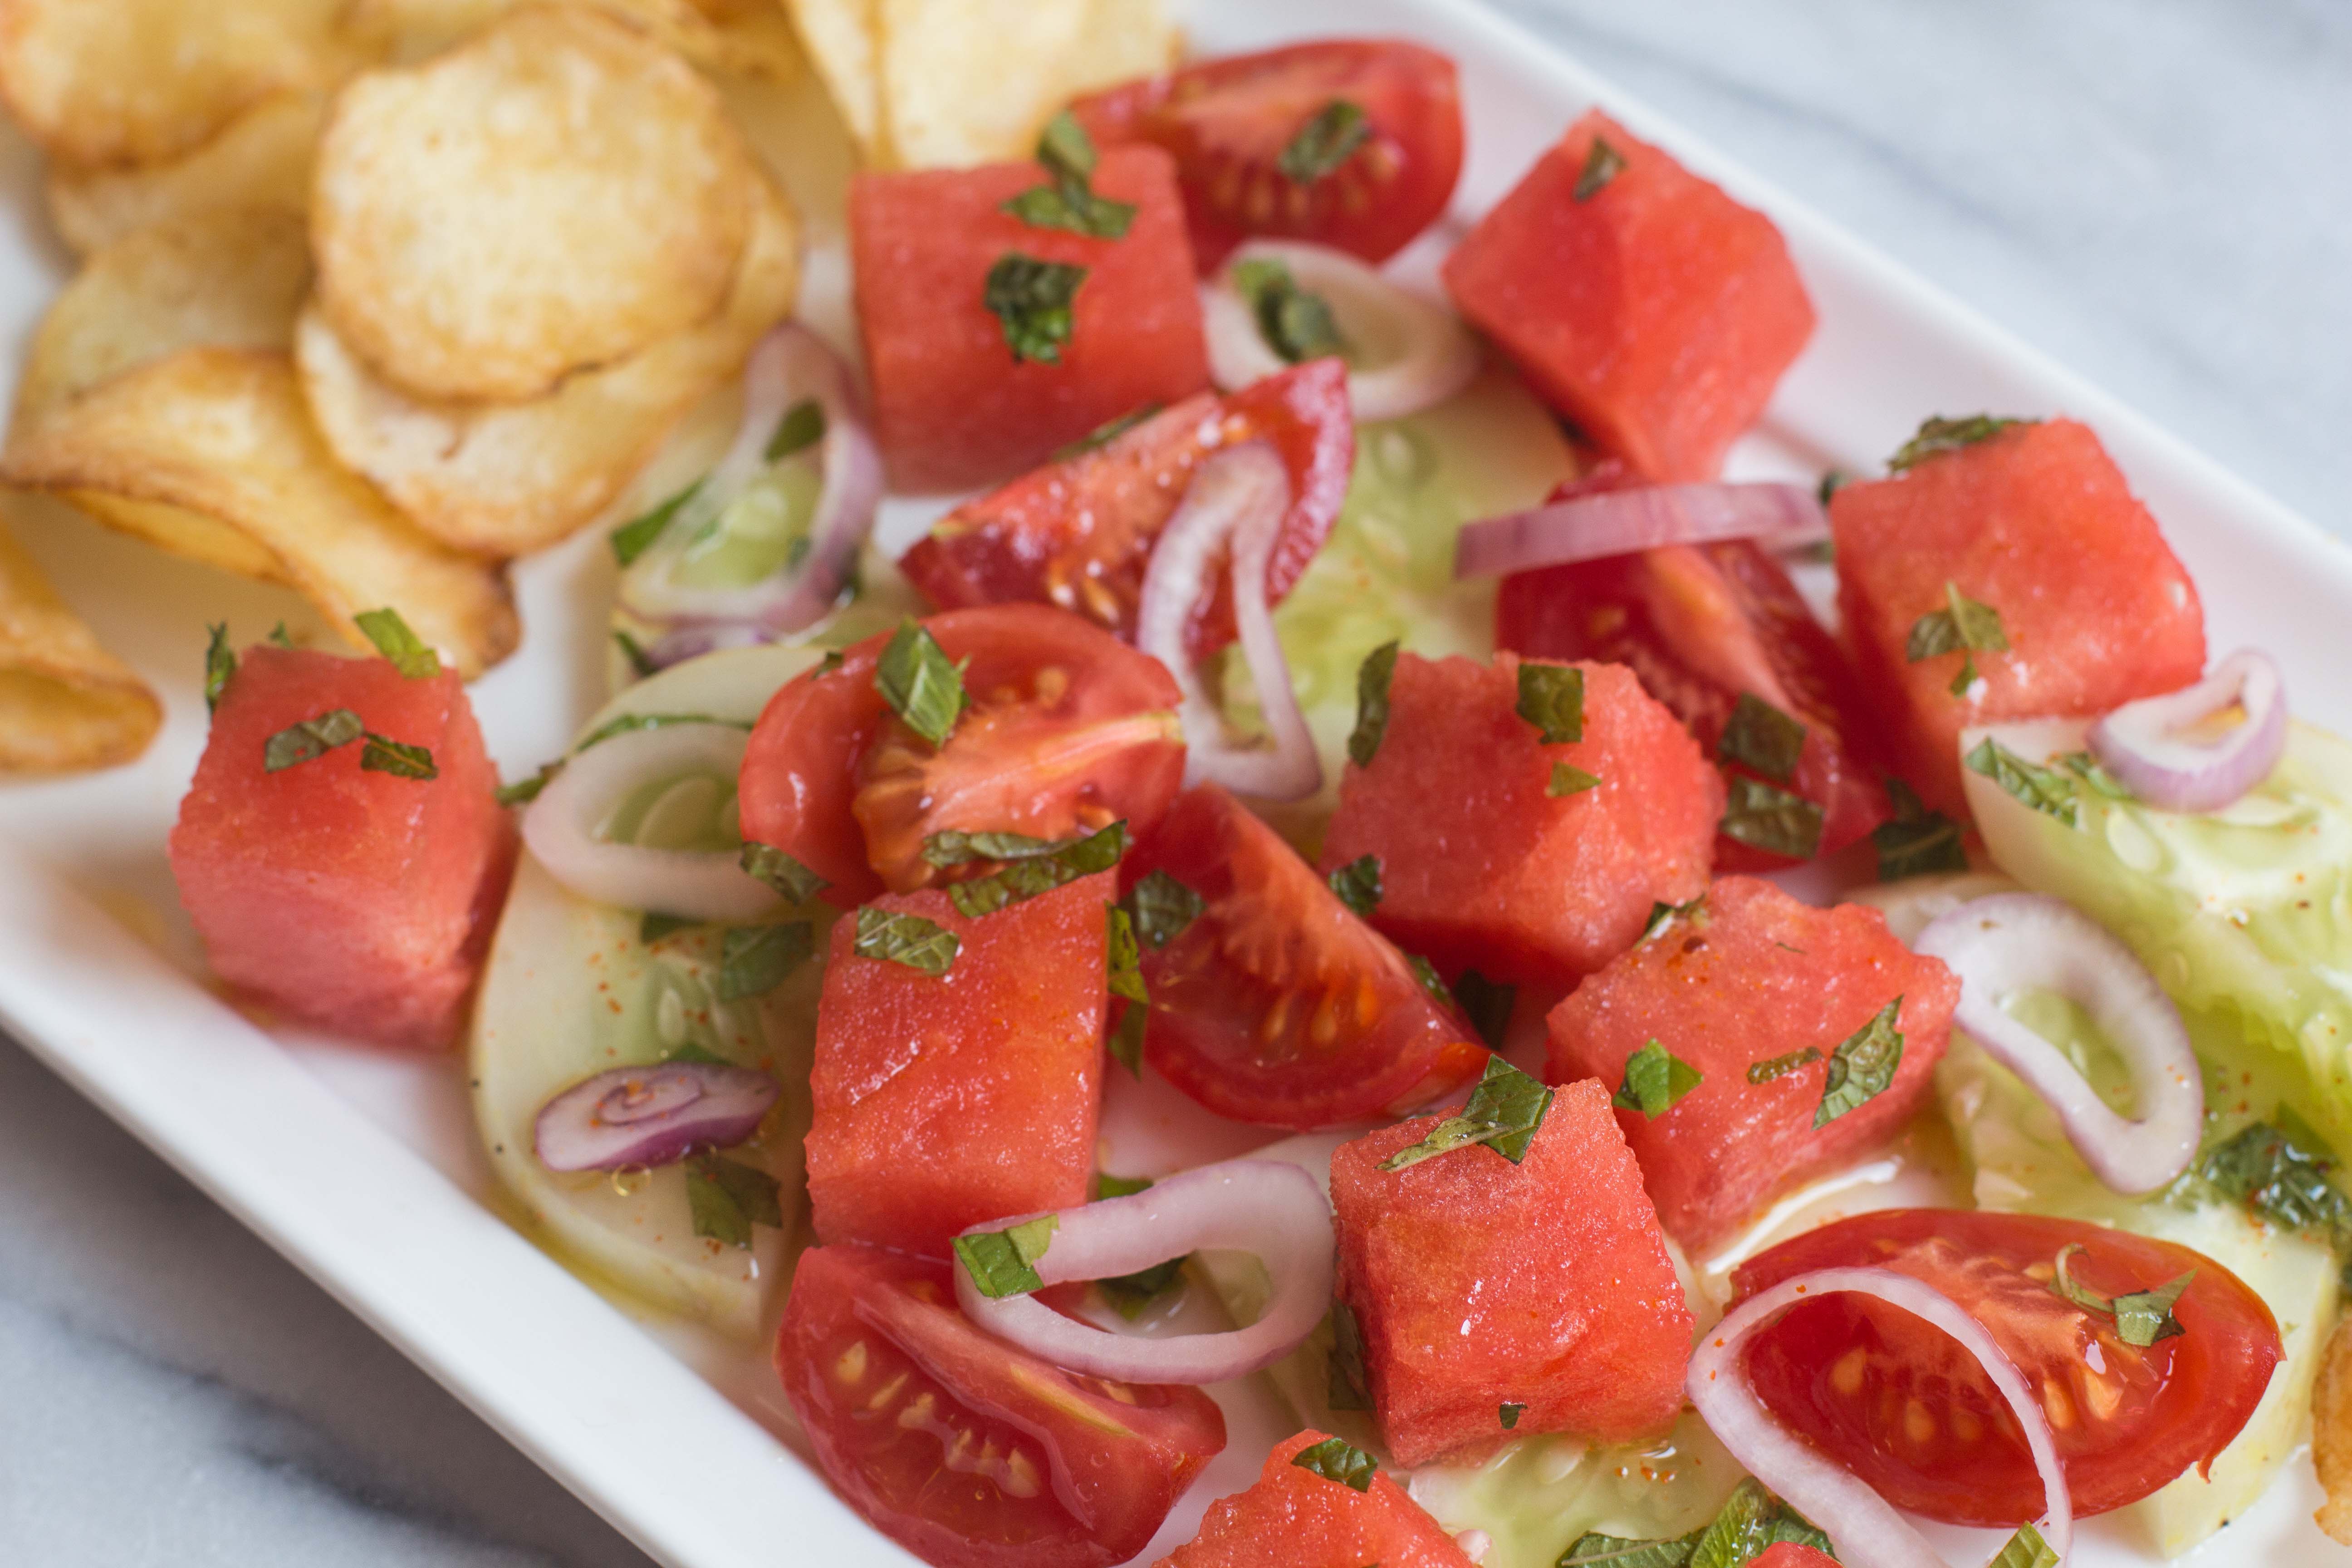 Menorca-Inspired Summer Salad with Harissa Dressing